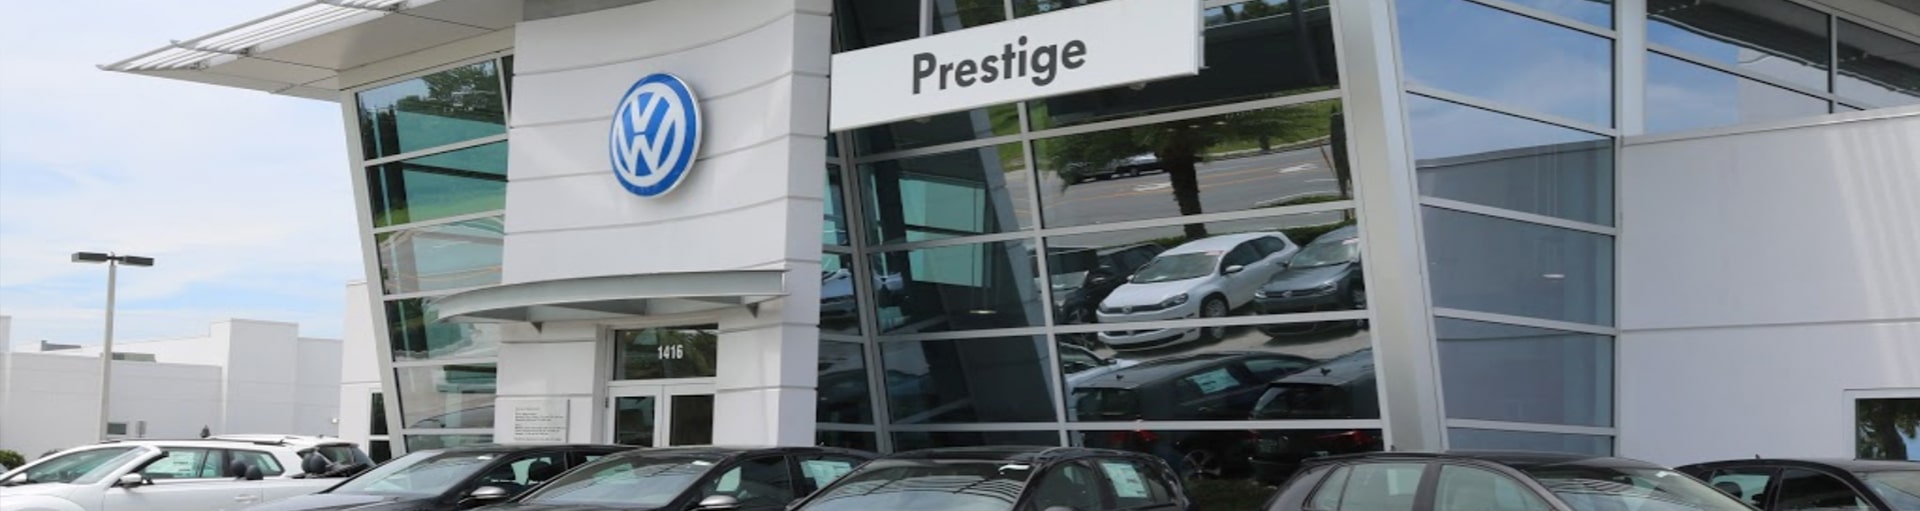 Prestige Volkswagen of Melbourne Filter Services